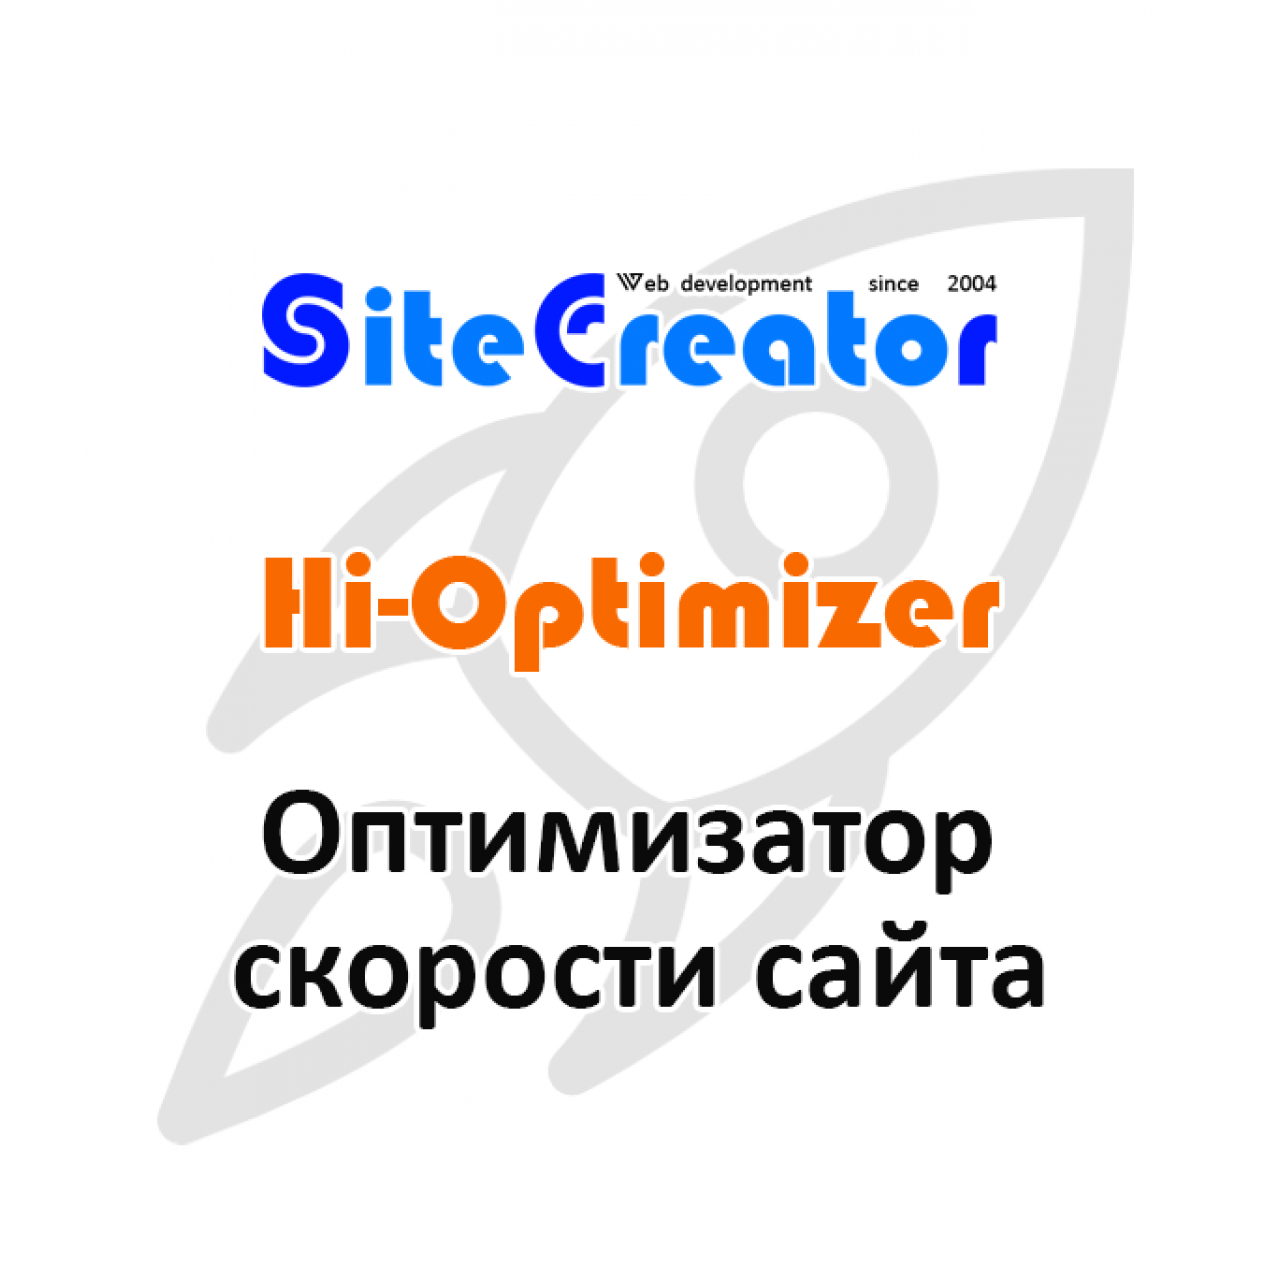 Hi-Optimizer for Opencart - интеллектуальный оптимизатор сайта для повышения скорости загрузки страниц и оценки pagespeed google  вер. 1.5.1 из категории Кэширование, Сжатие, Ускорение для CMS OpenCart (ОпенКарт)